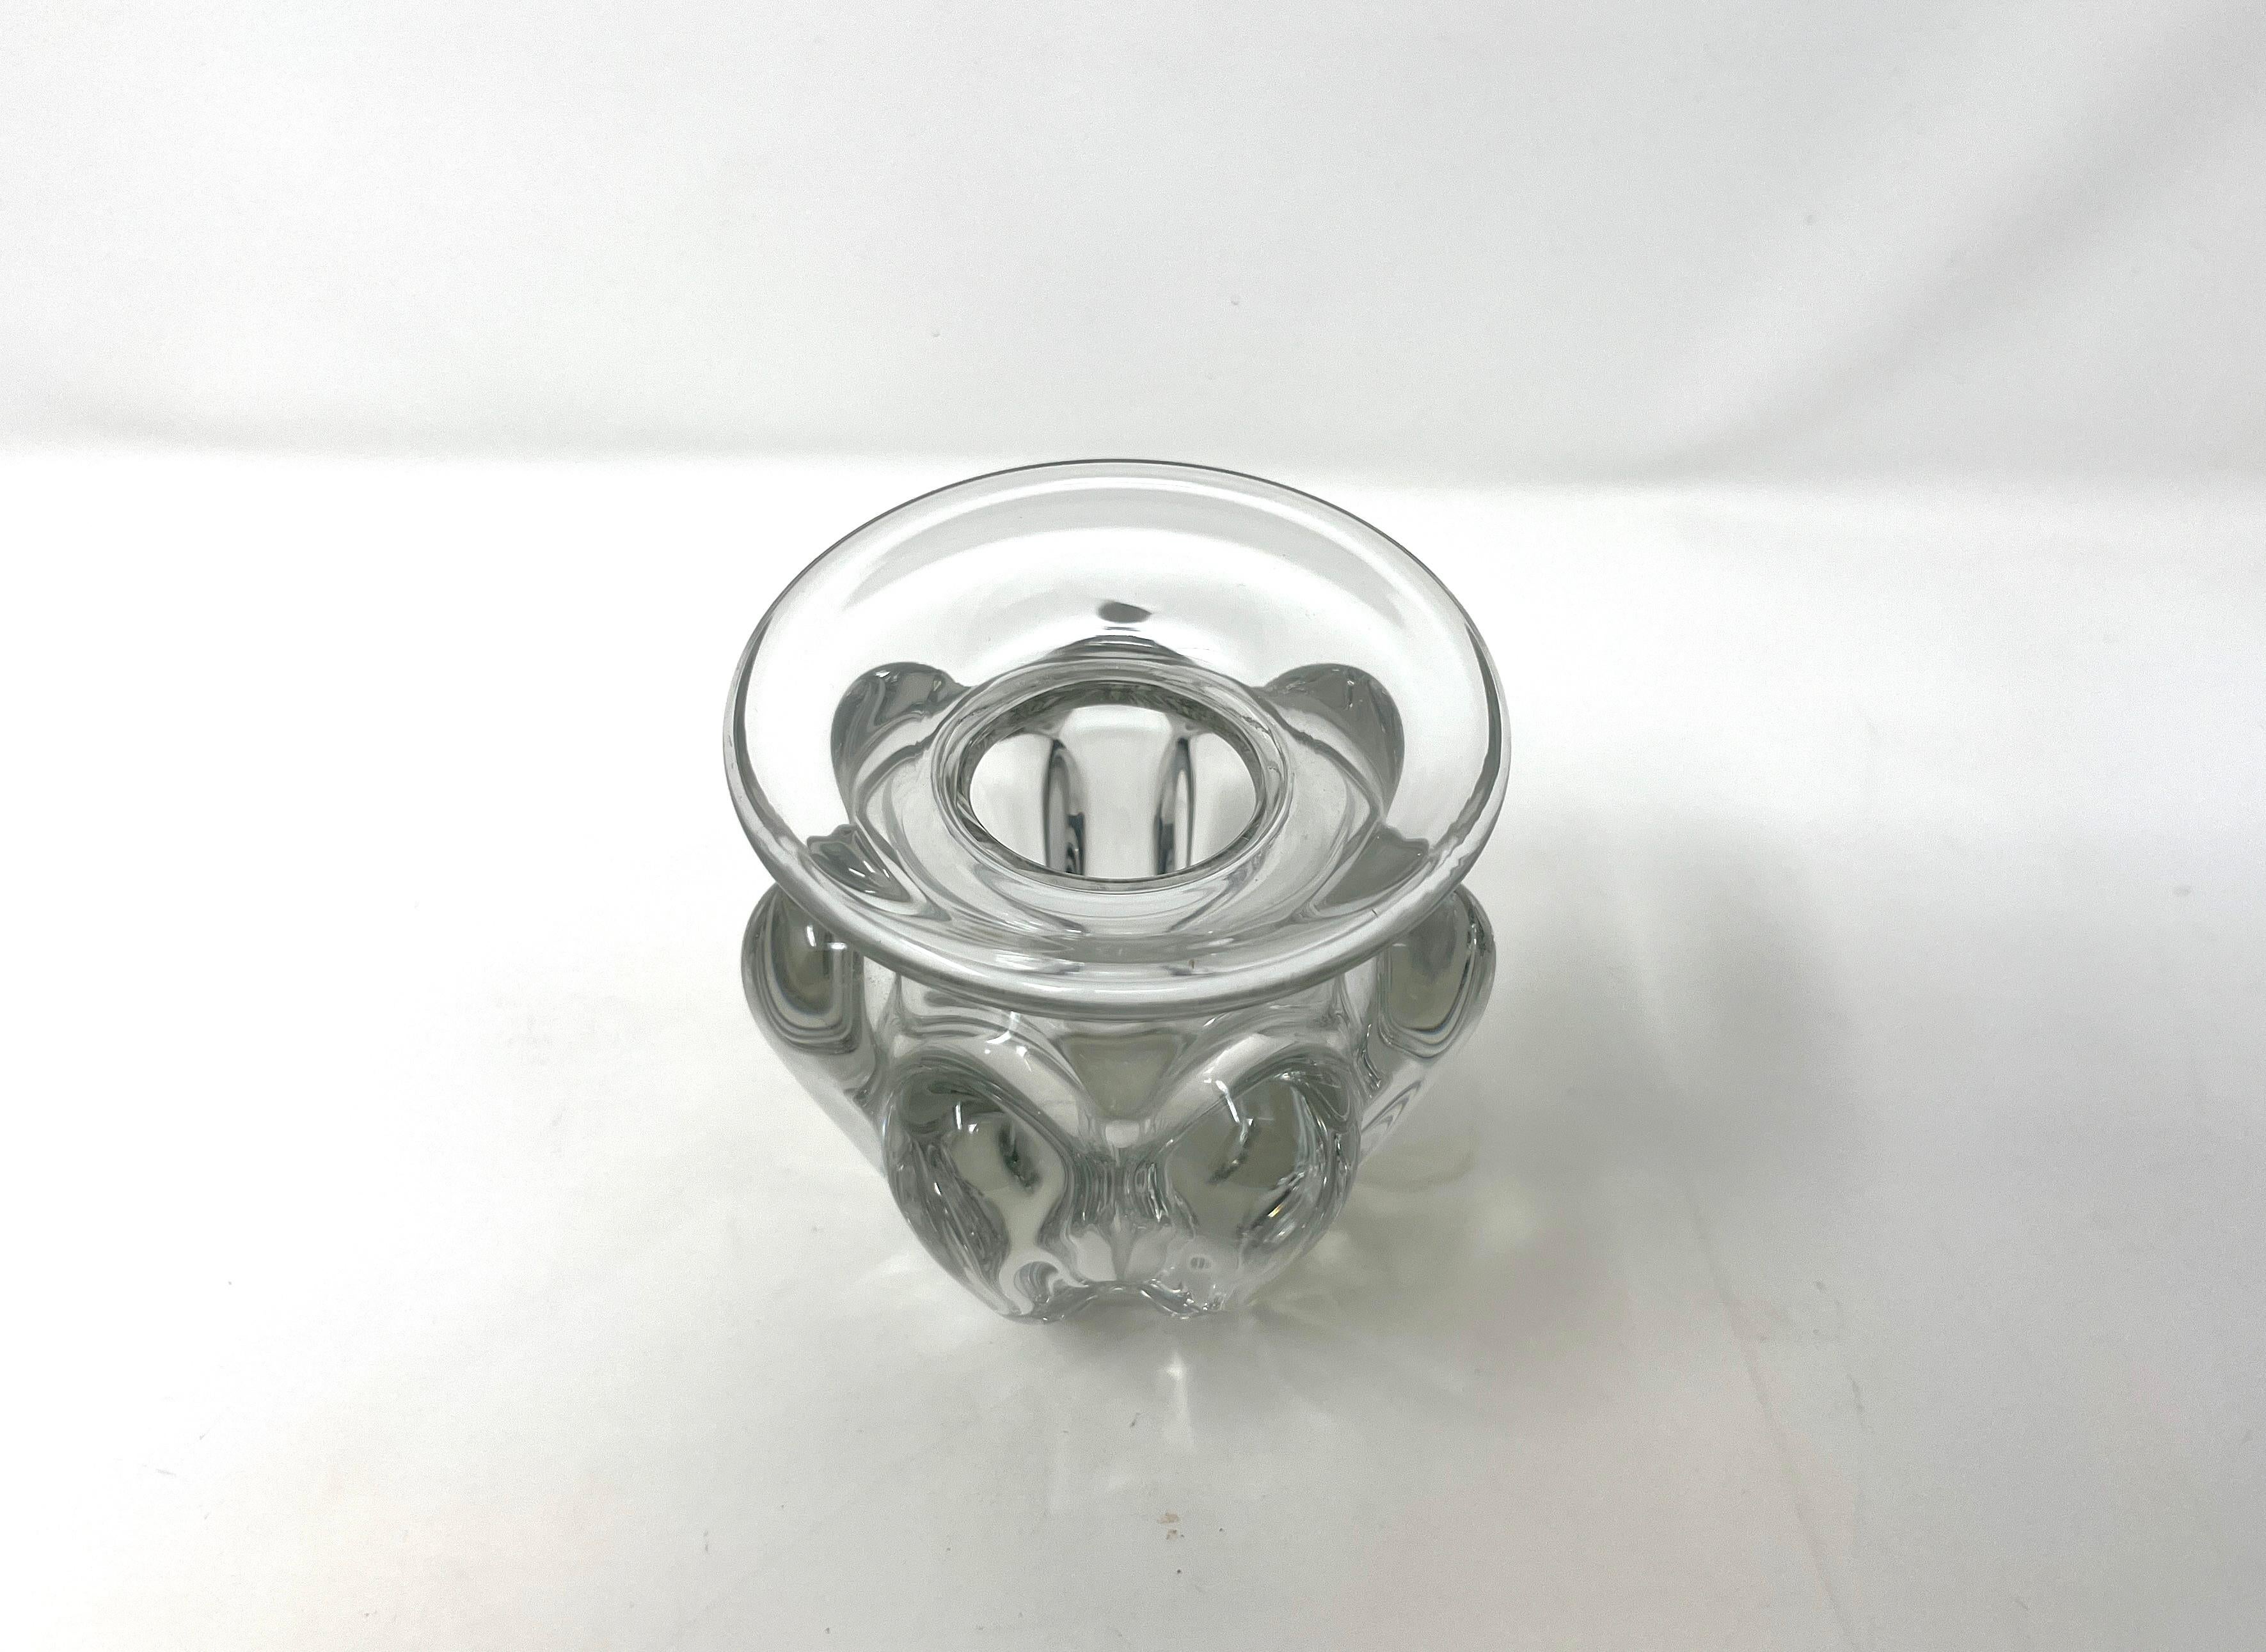 Einzigartige Vase aus klarem Kunstglas, hergestellt von Art Vannes in Frankreich um 1970 im Stil der Jahrhundertmitte (Mid-Century Modern). Eine schöne, gedrungene und schwere Vase mit dicken, gerippten Seiten und einem großen, runden, flachen Rand.